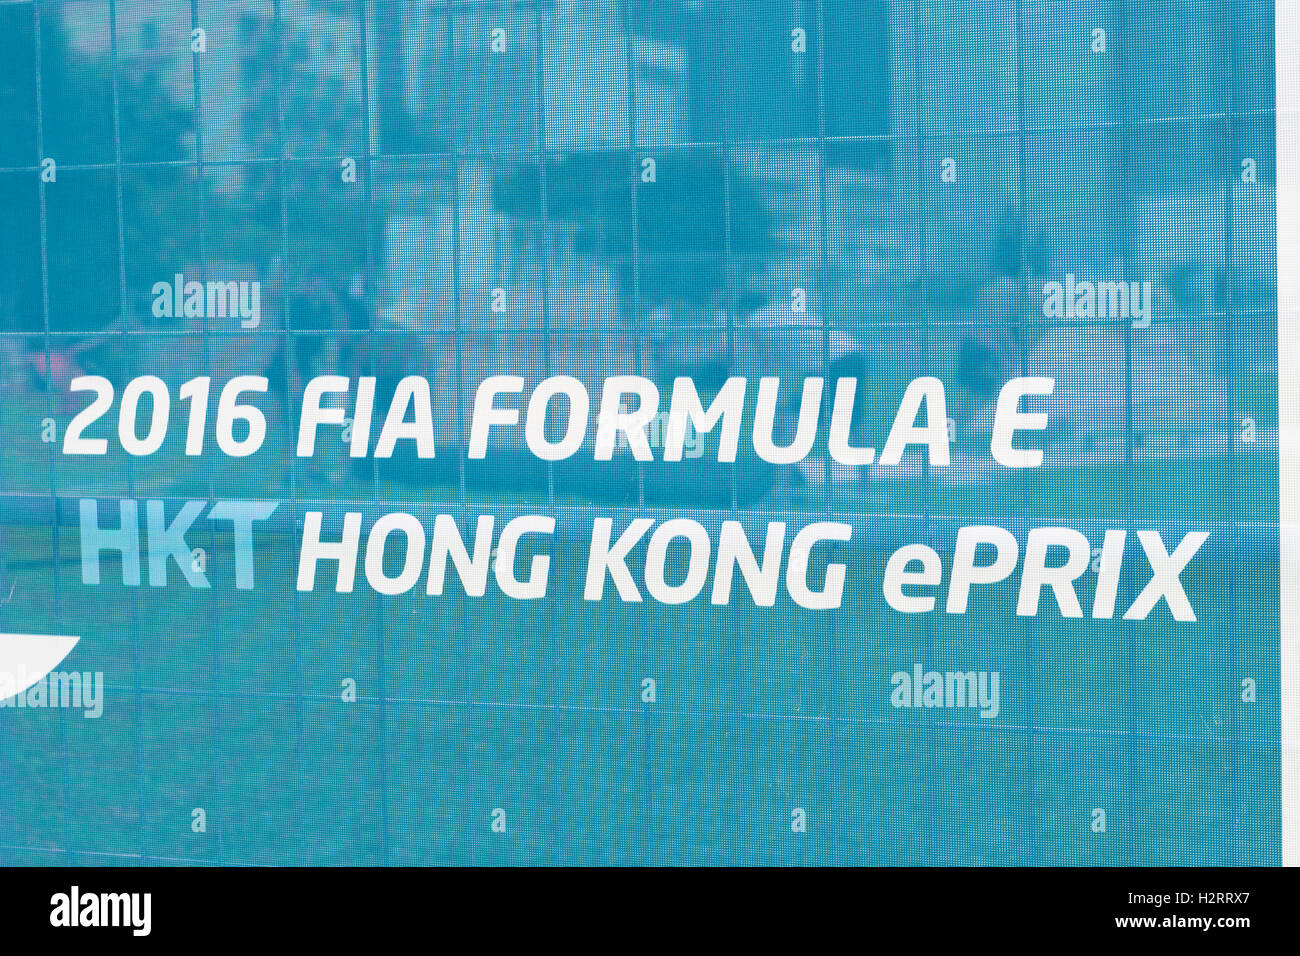 Les préparatifs pour la formule e grand prix race 2016 à Harbourfront Centre à hong kong, Chine. photo : alamy live news.2 octobre 2016. Banque D'Images